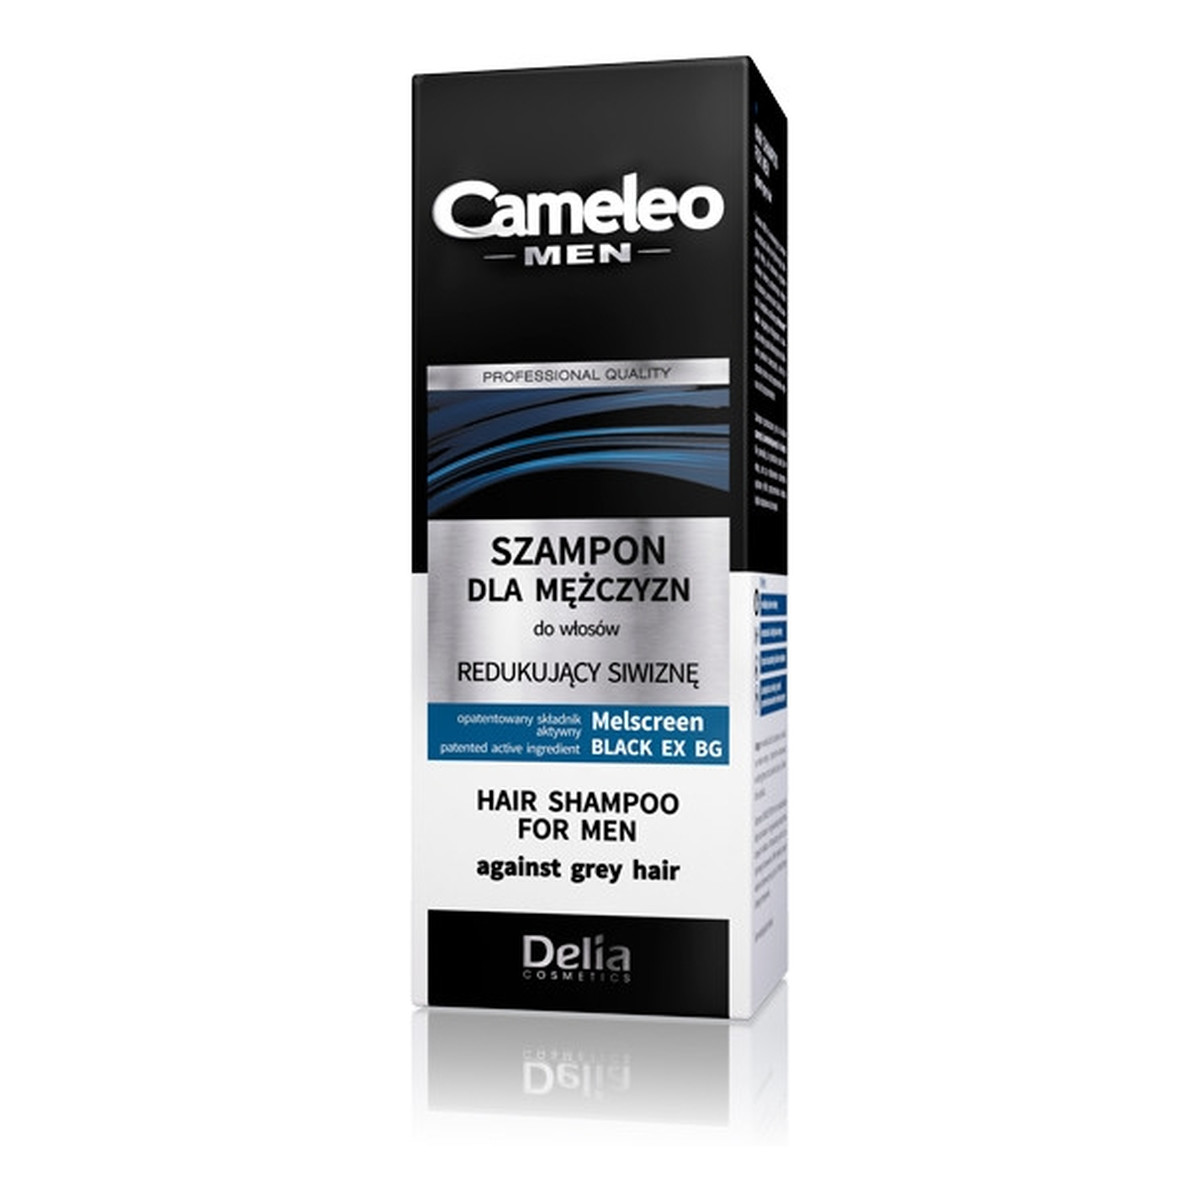 Cameleo Men Redukcja Siwizny Szampon Dla Mężczyzn 150ml